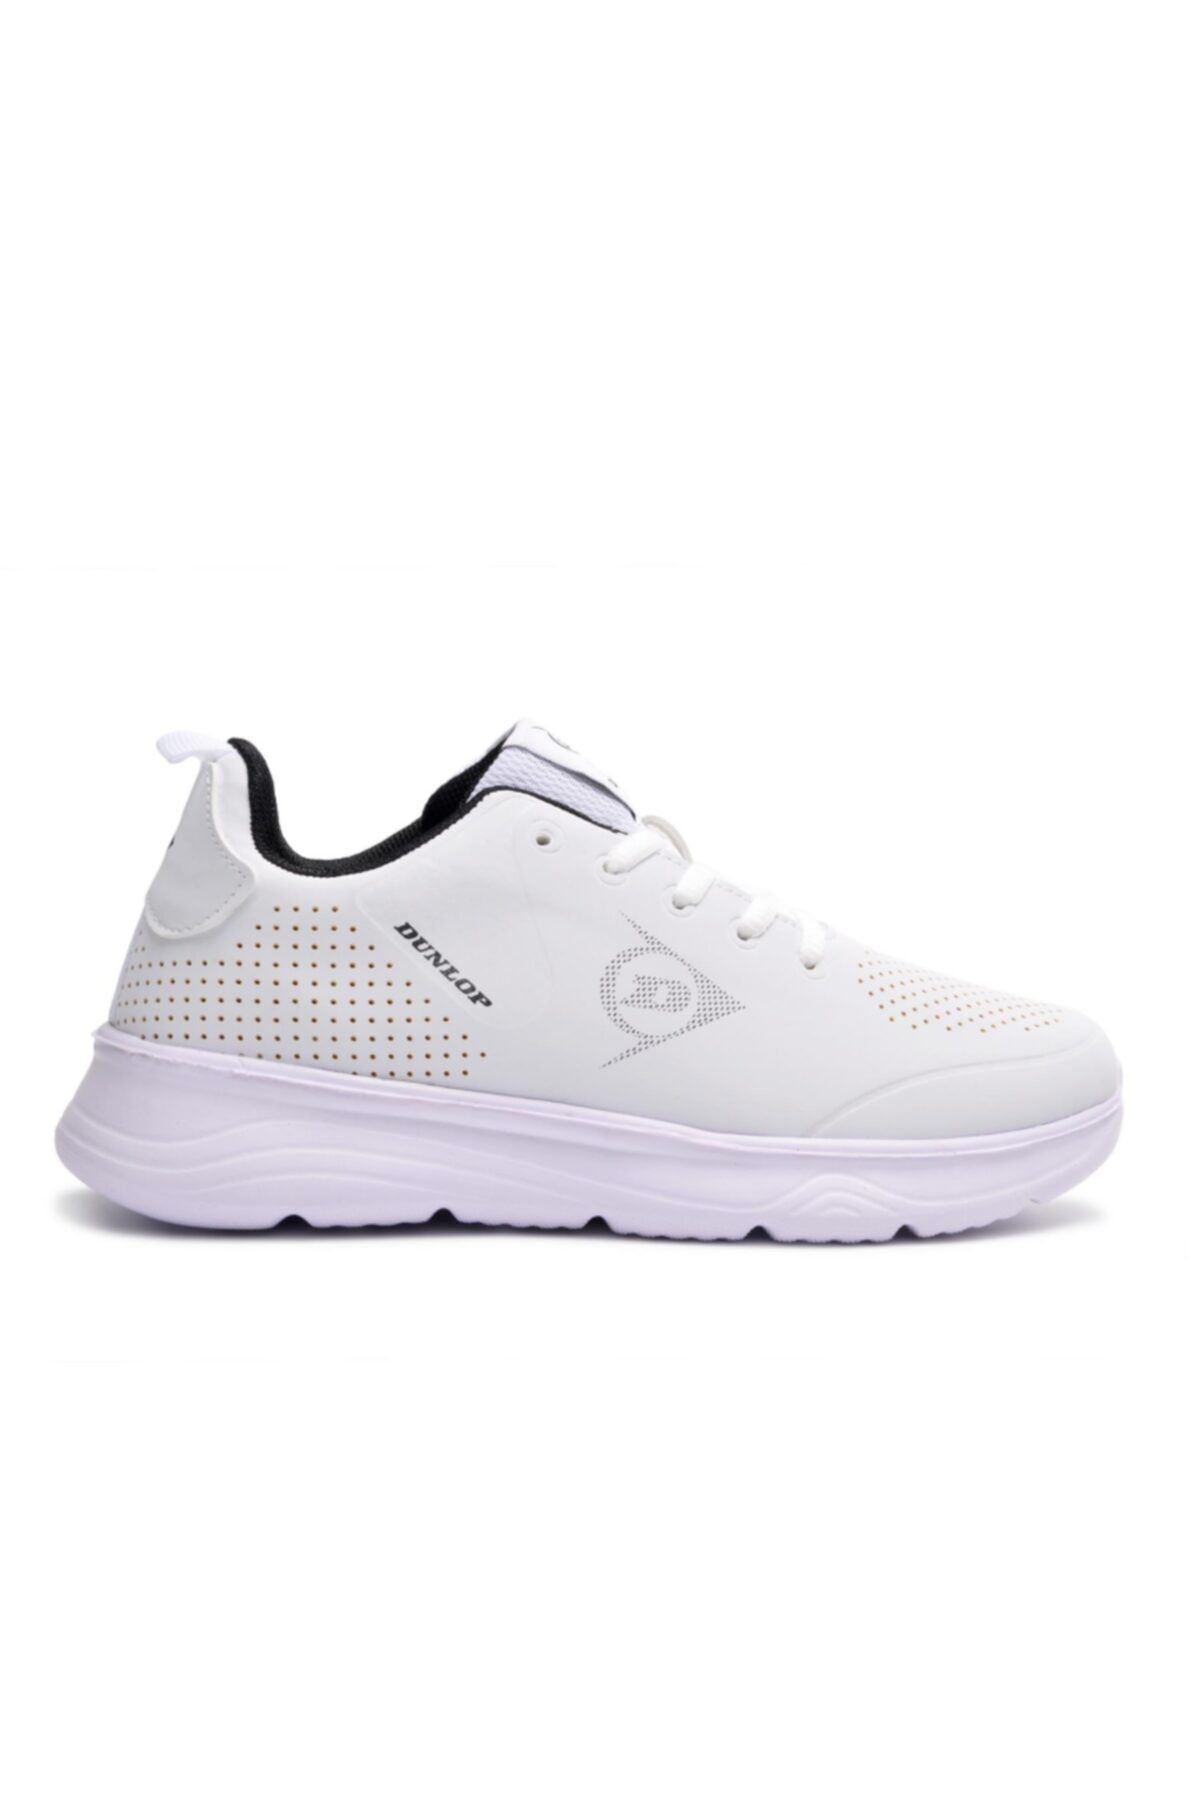 Dunlop Dnp-4122 Beyaz Kadın Hafif Yürüyüş Ayakkabısı